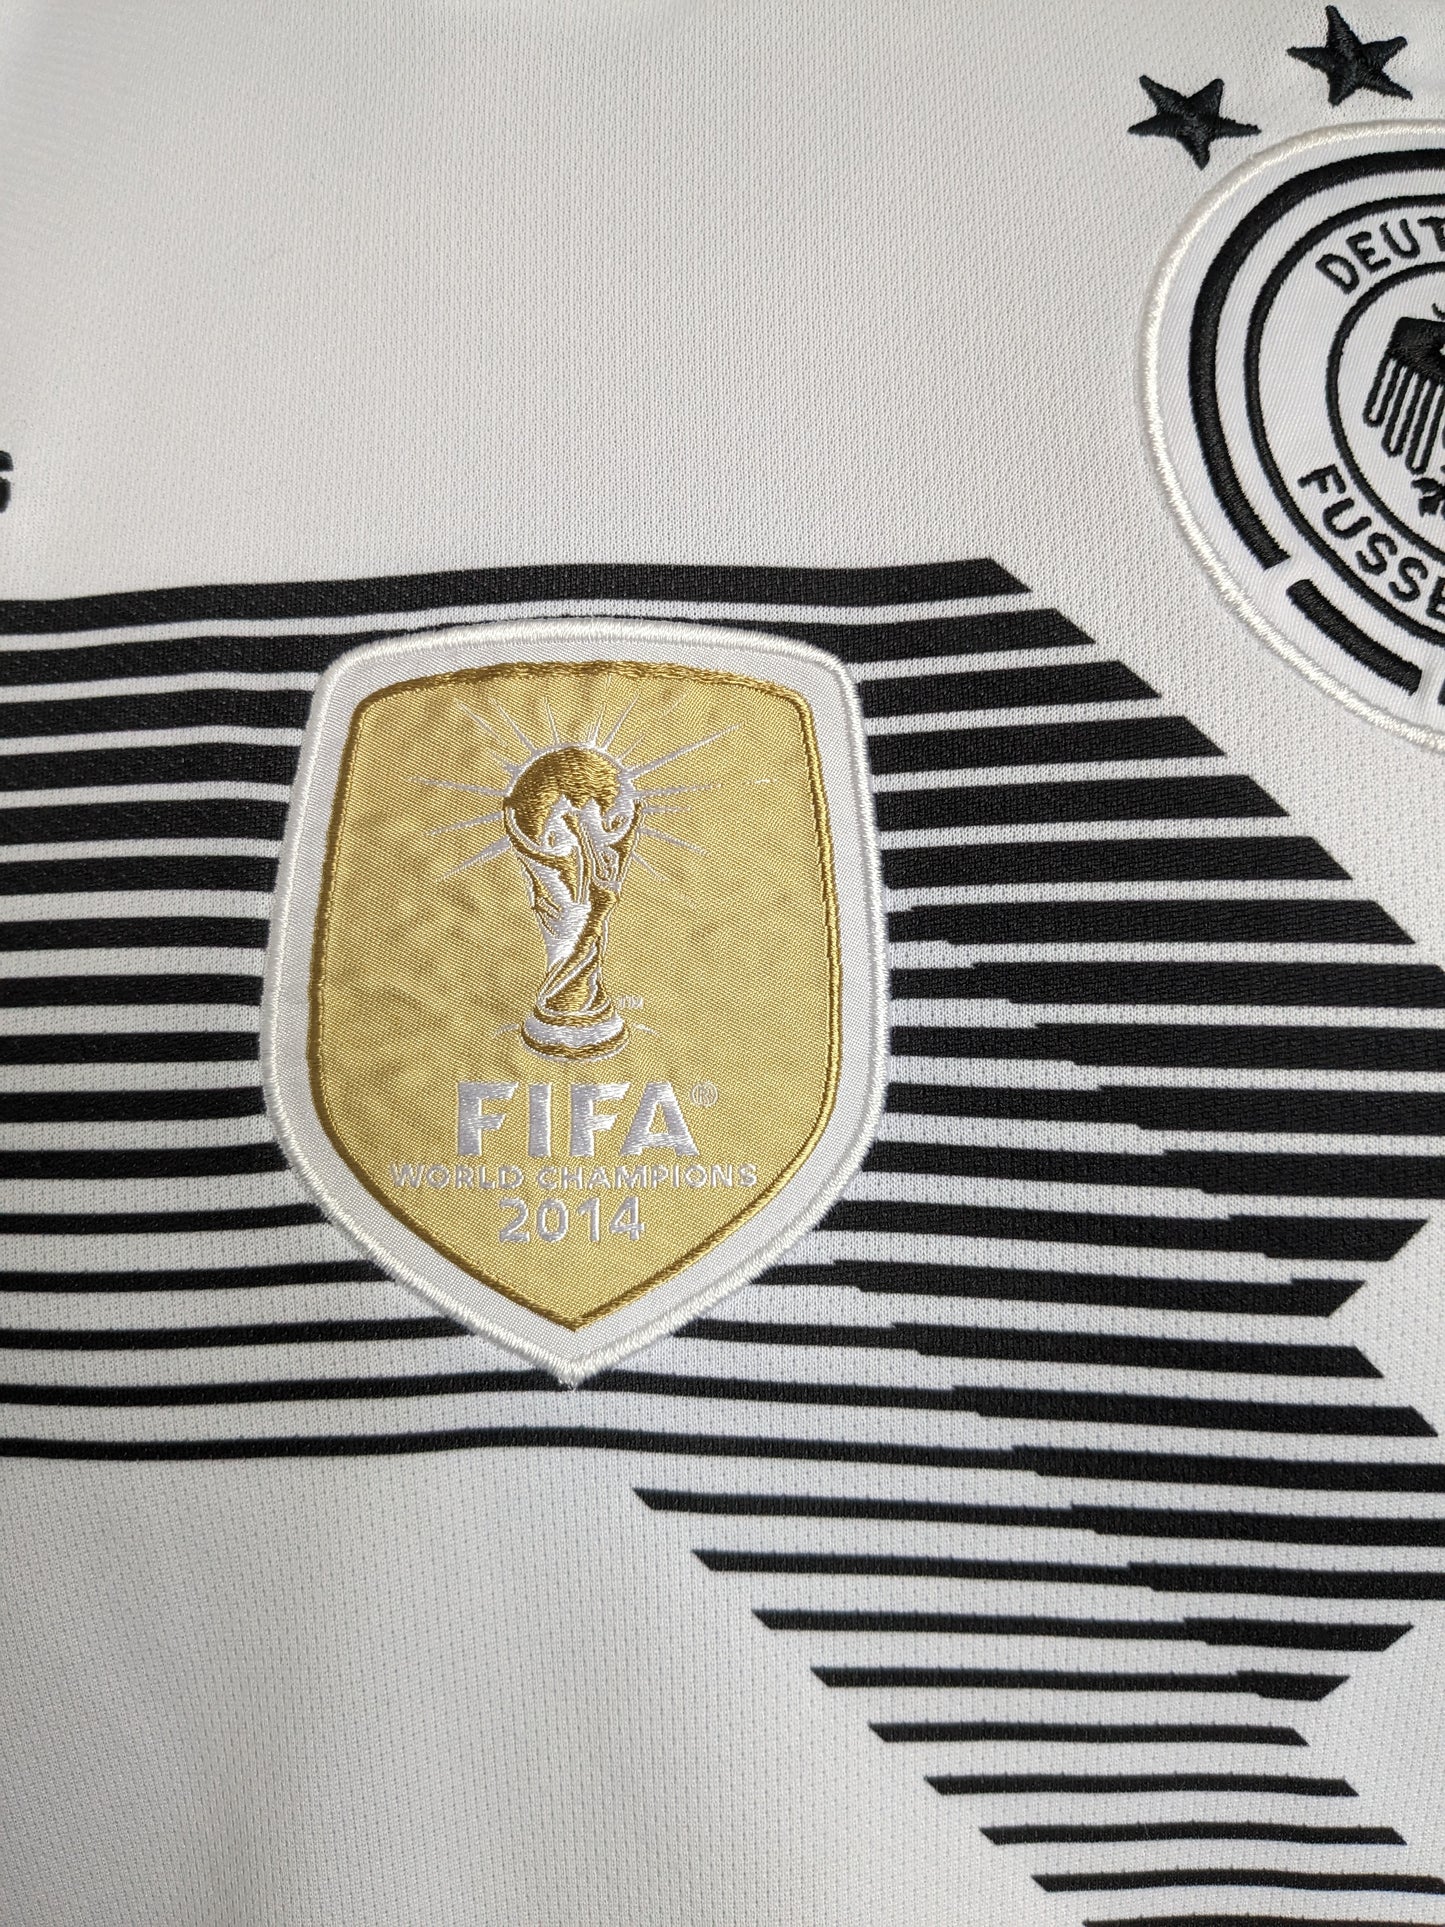 Adidas Deutscher Fussball -Bund -Hemd. Weiß schwarz gefärbt. FIFA 2014. Größe M.